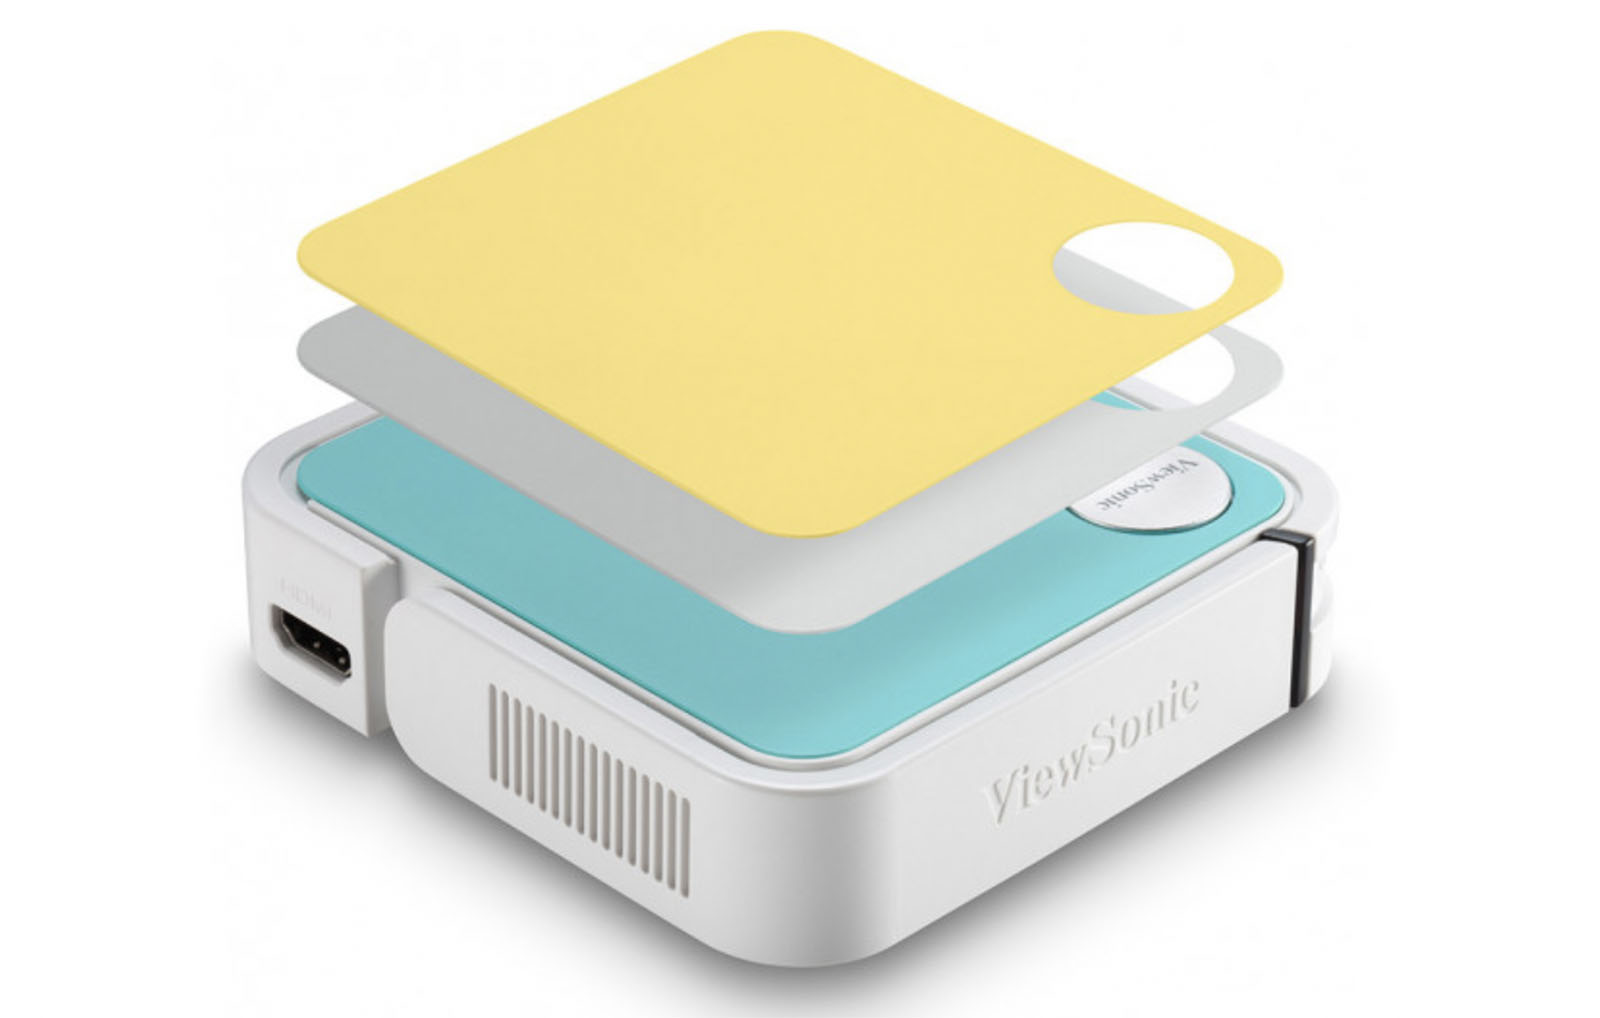 Viewsonic ra mắt sản phẩm máy chiếu di động bỏ túi M1 Mini